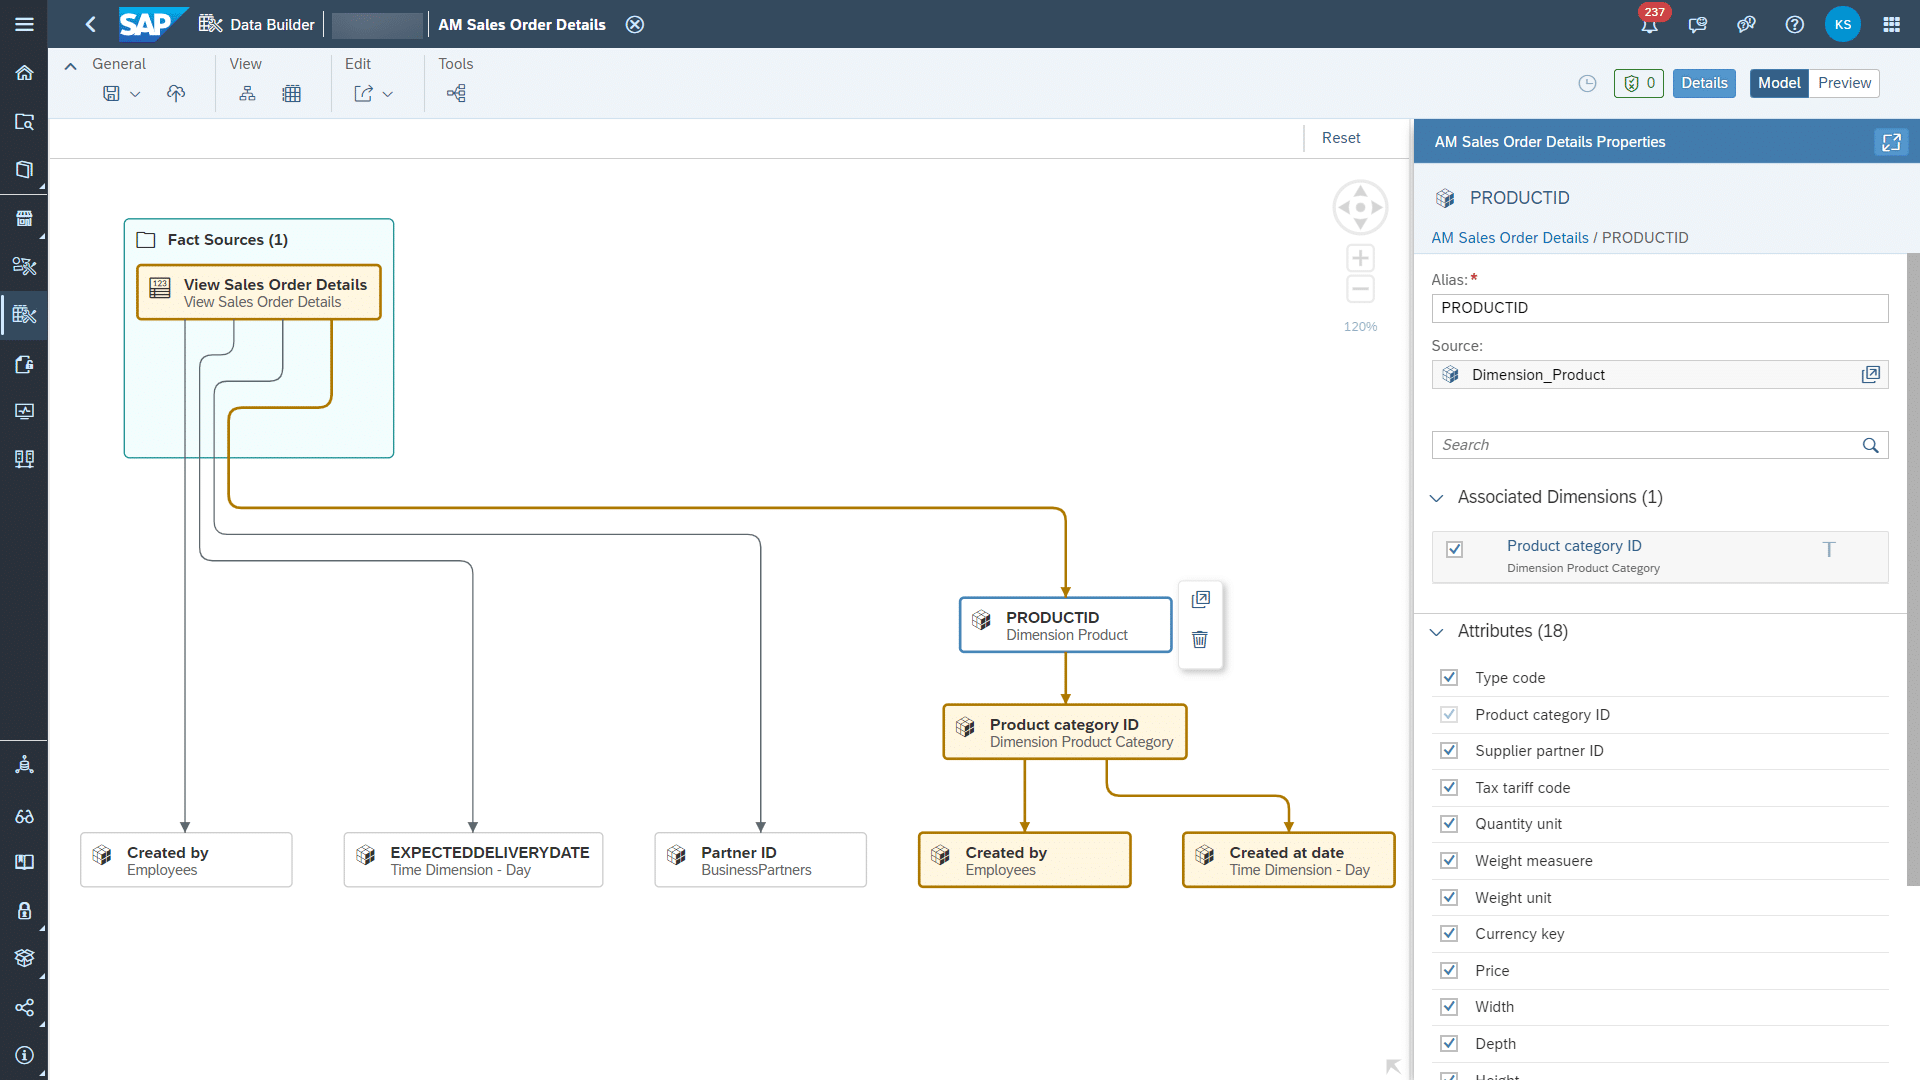 Modelo de análisis de SAP Datasphere